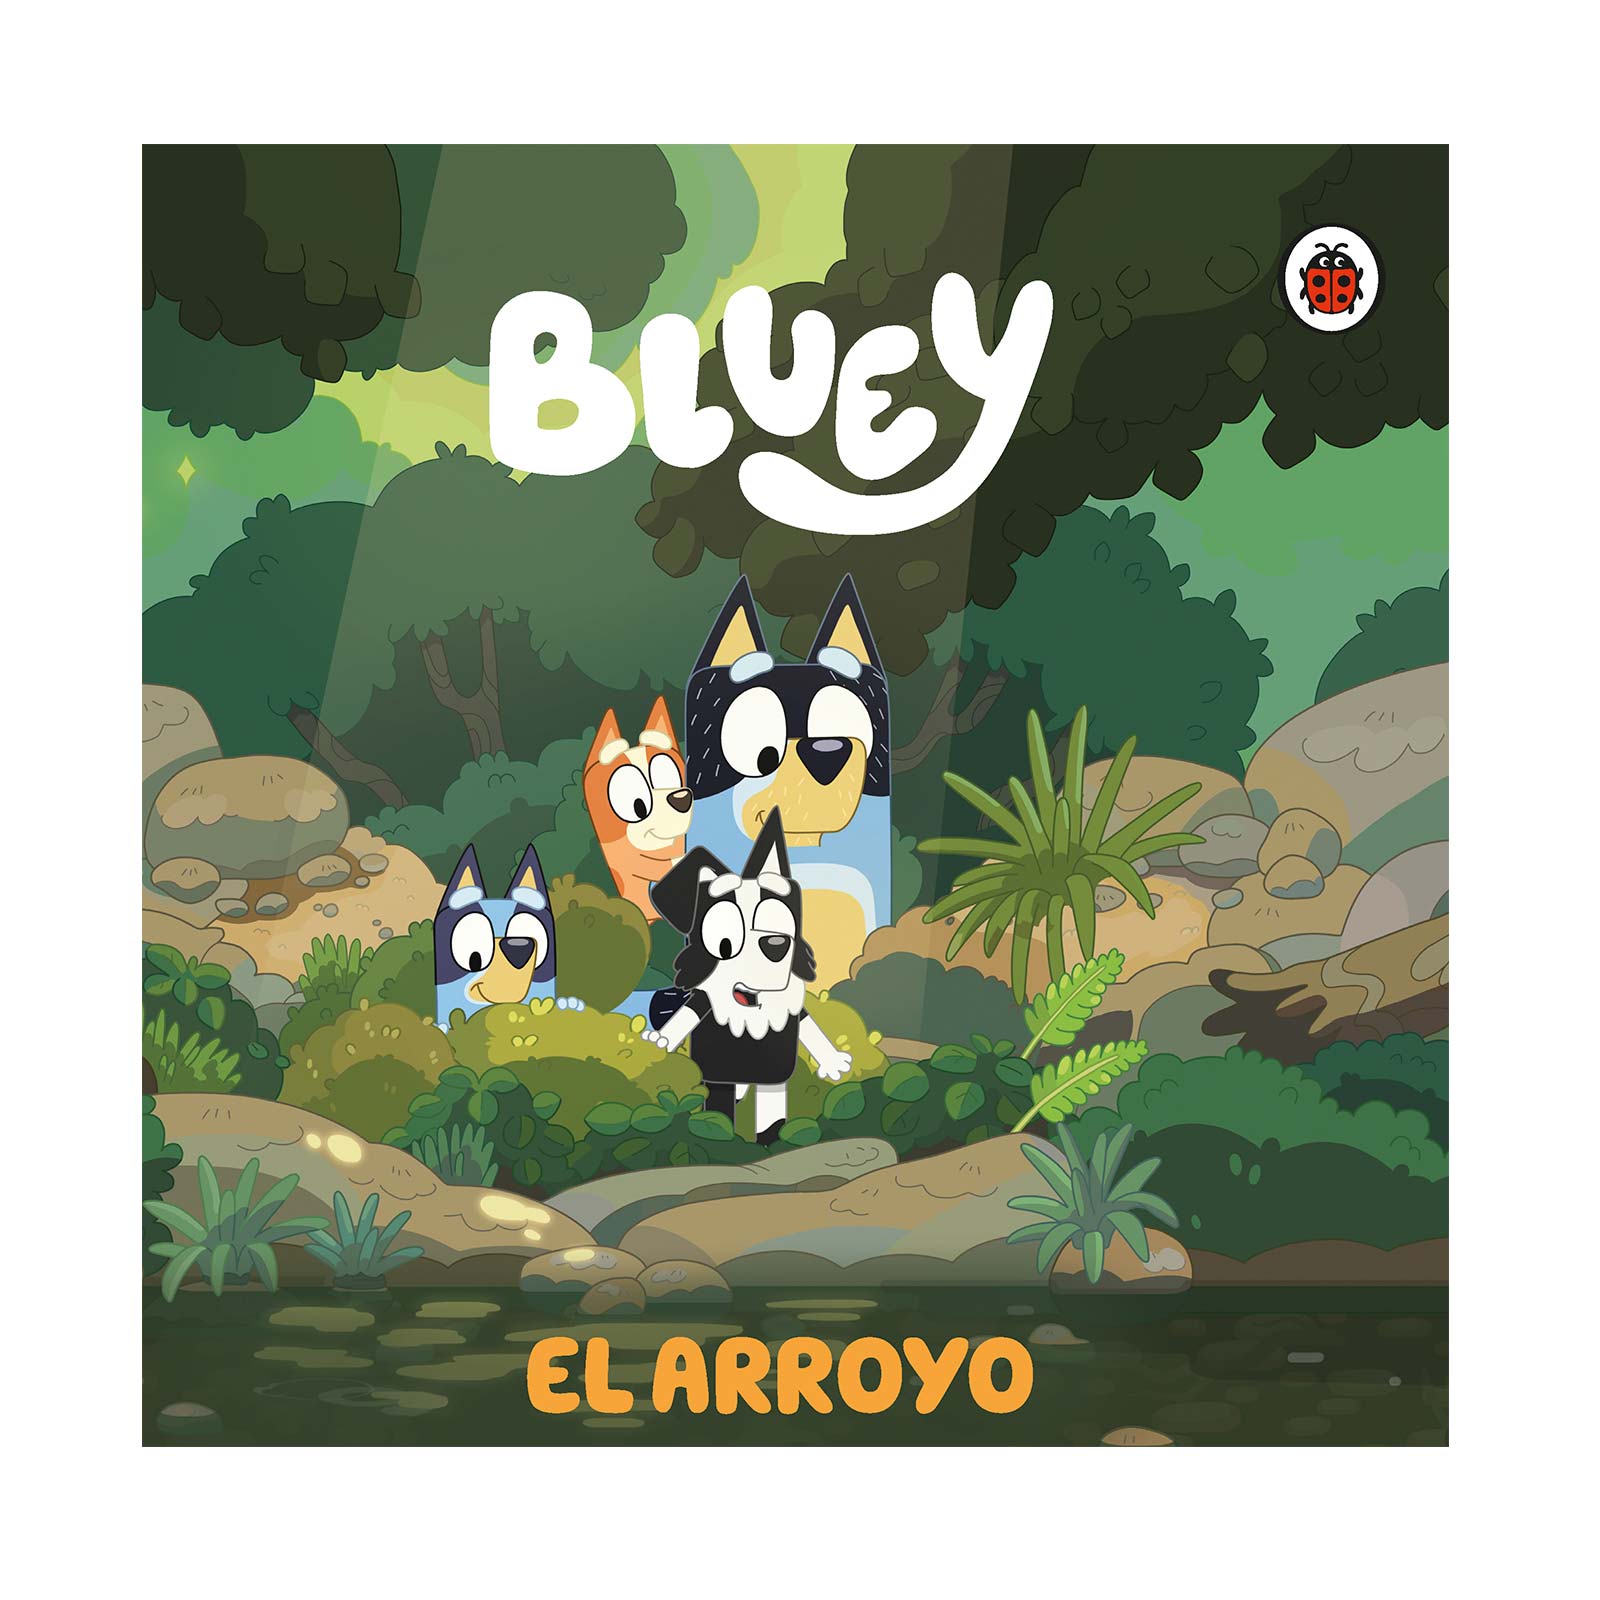 Bluey - Libro de Juegos de Bluey +3 años